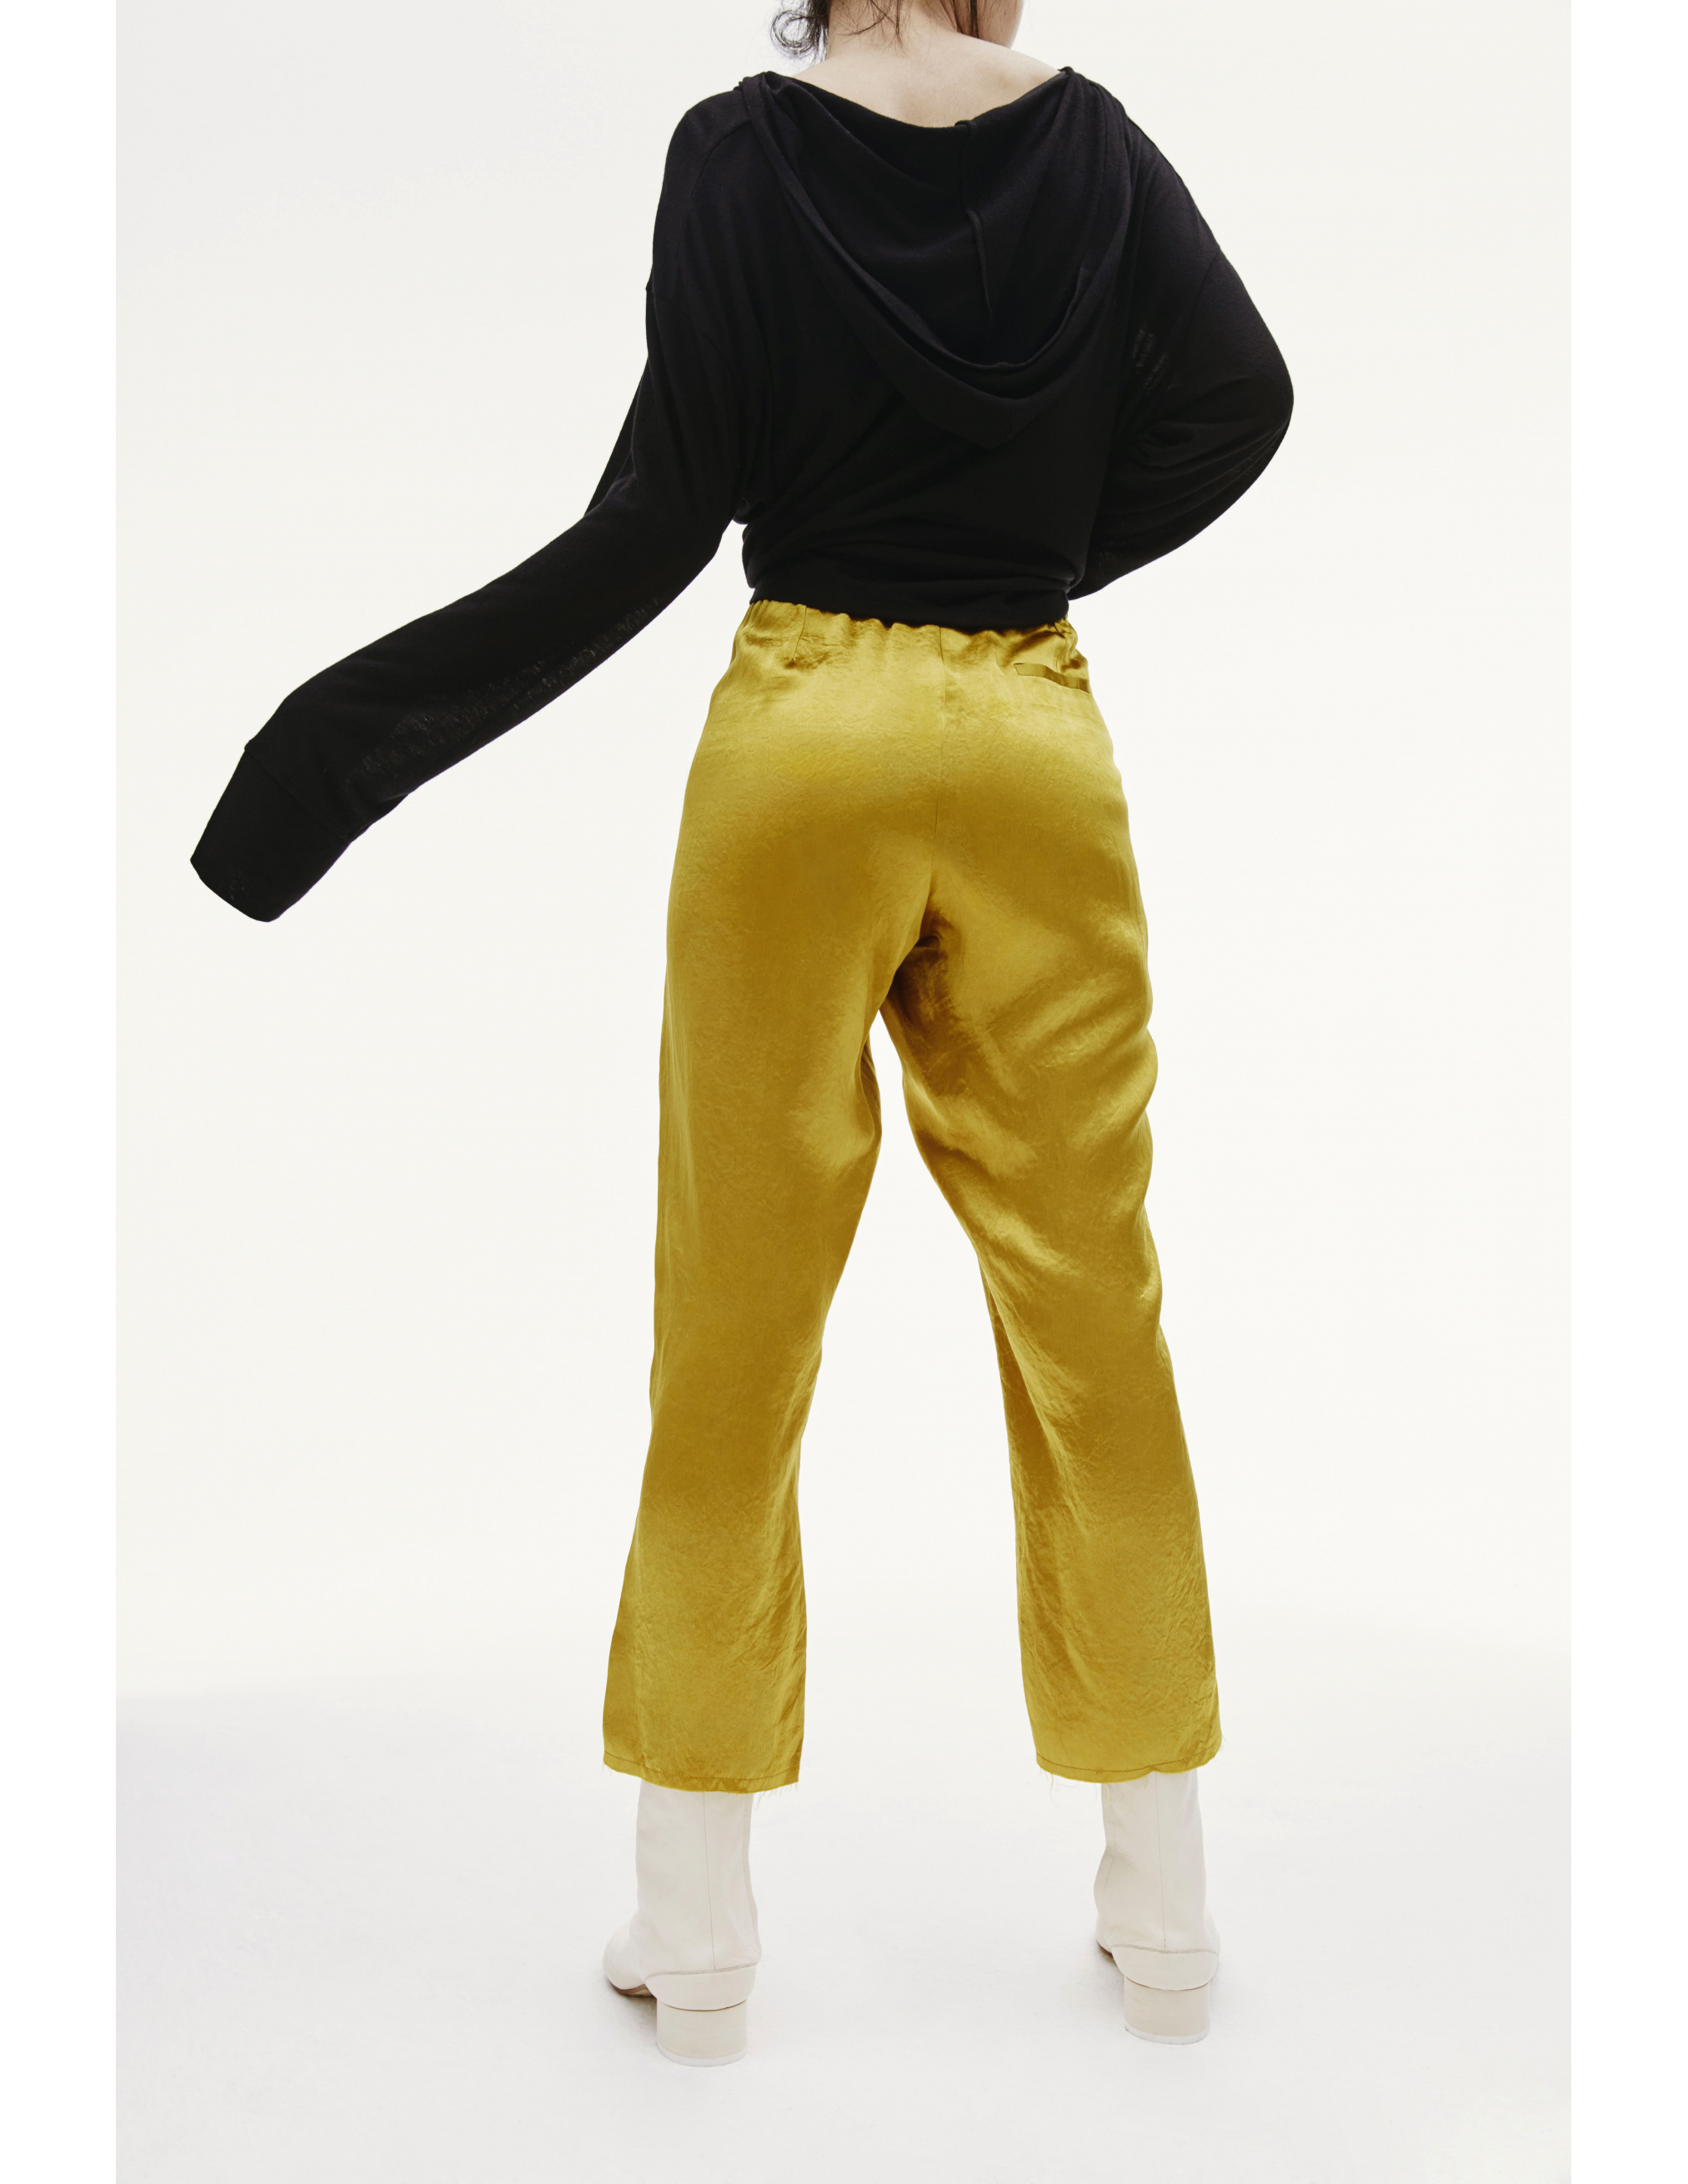 Золотистые укороченные брюки - Ann Demeulemeester 1902-1406-P-126-018 Фото 3